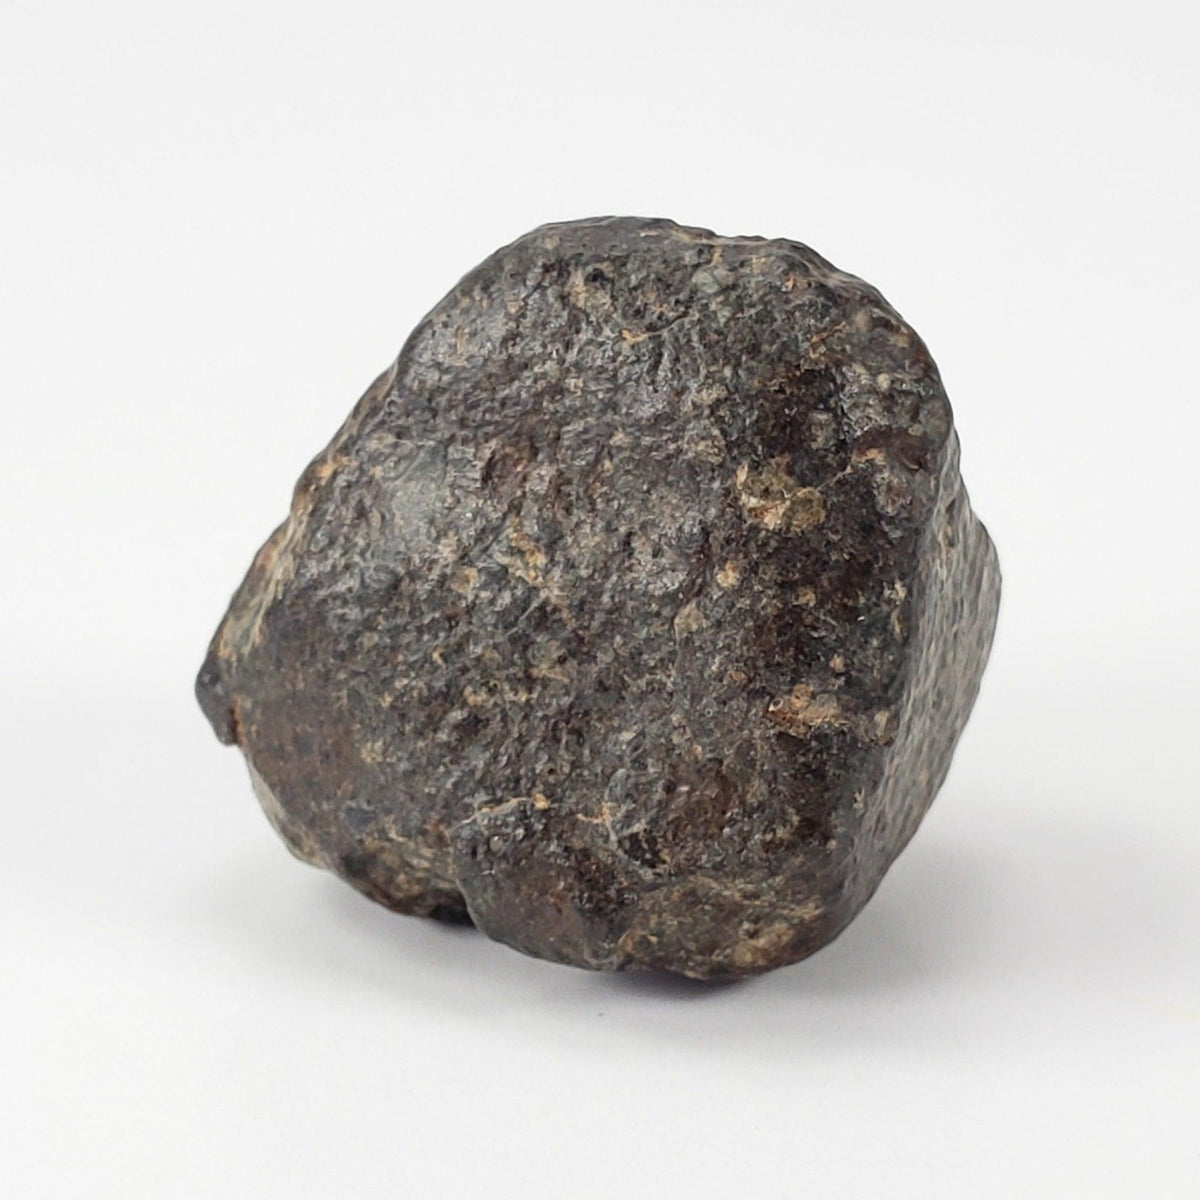 NWA 869 Meteorite | 9.56 Grams | Individual | L3-6 Chondrite | Crusted Specimen